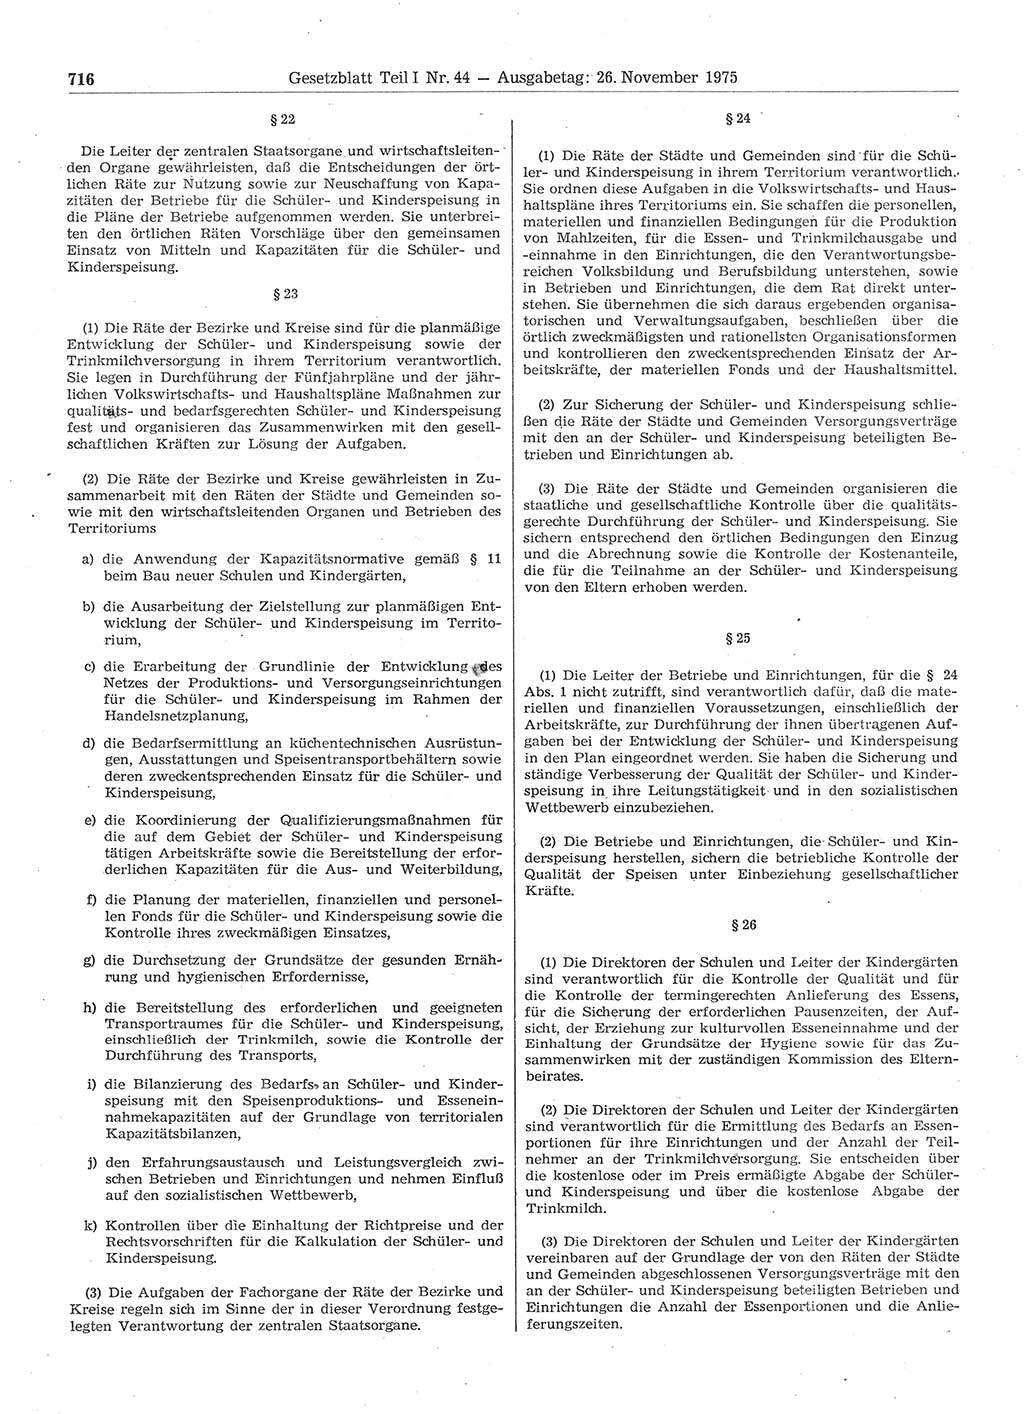 Gesetzblatt (GBl.) der Deutschen Demokratischen Republik (DDR) Teil Ⅰ 1975, Seite 716 (GBl. DDR Ⅰ 1975, S. 716)